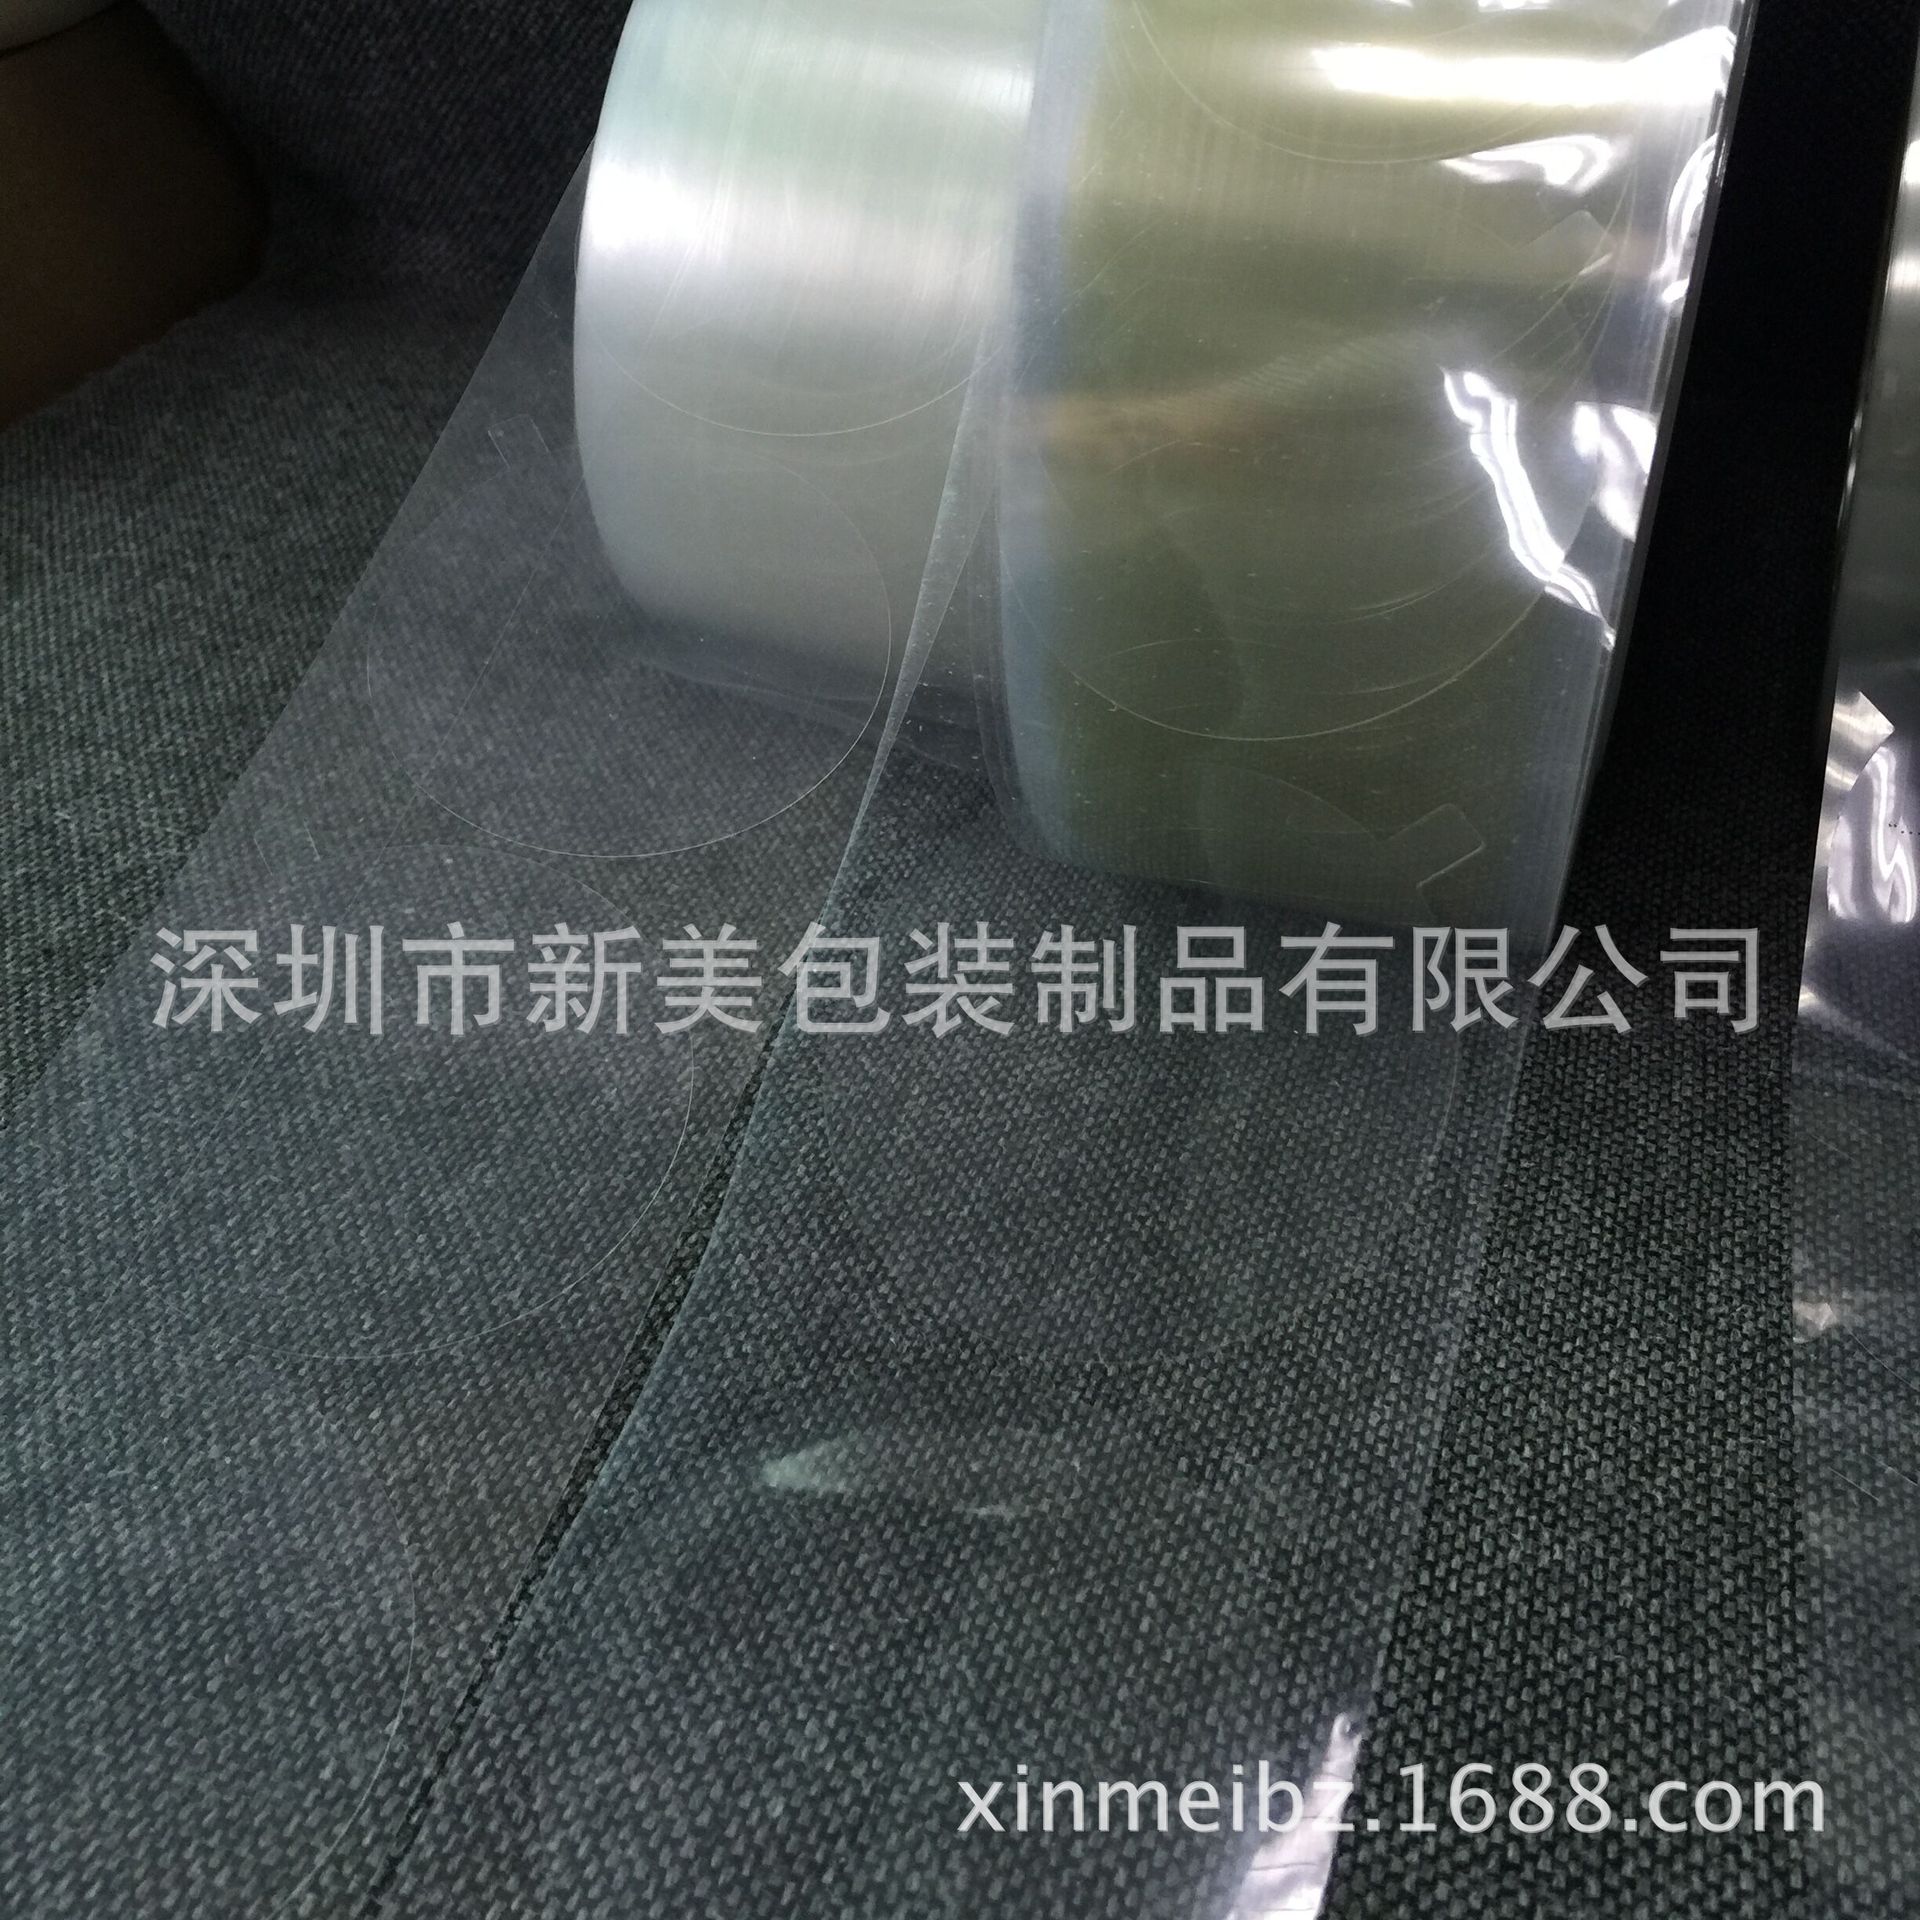 厂家直销 圆形pet防尘保护膜 pvc防静电透明保护膜 量大从优 包邮图片